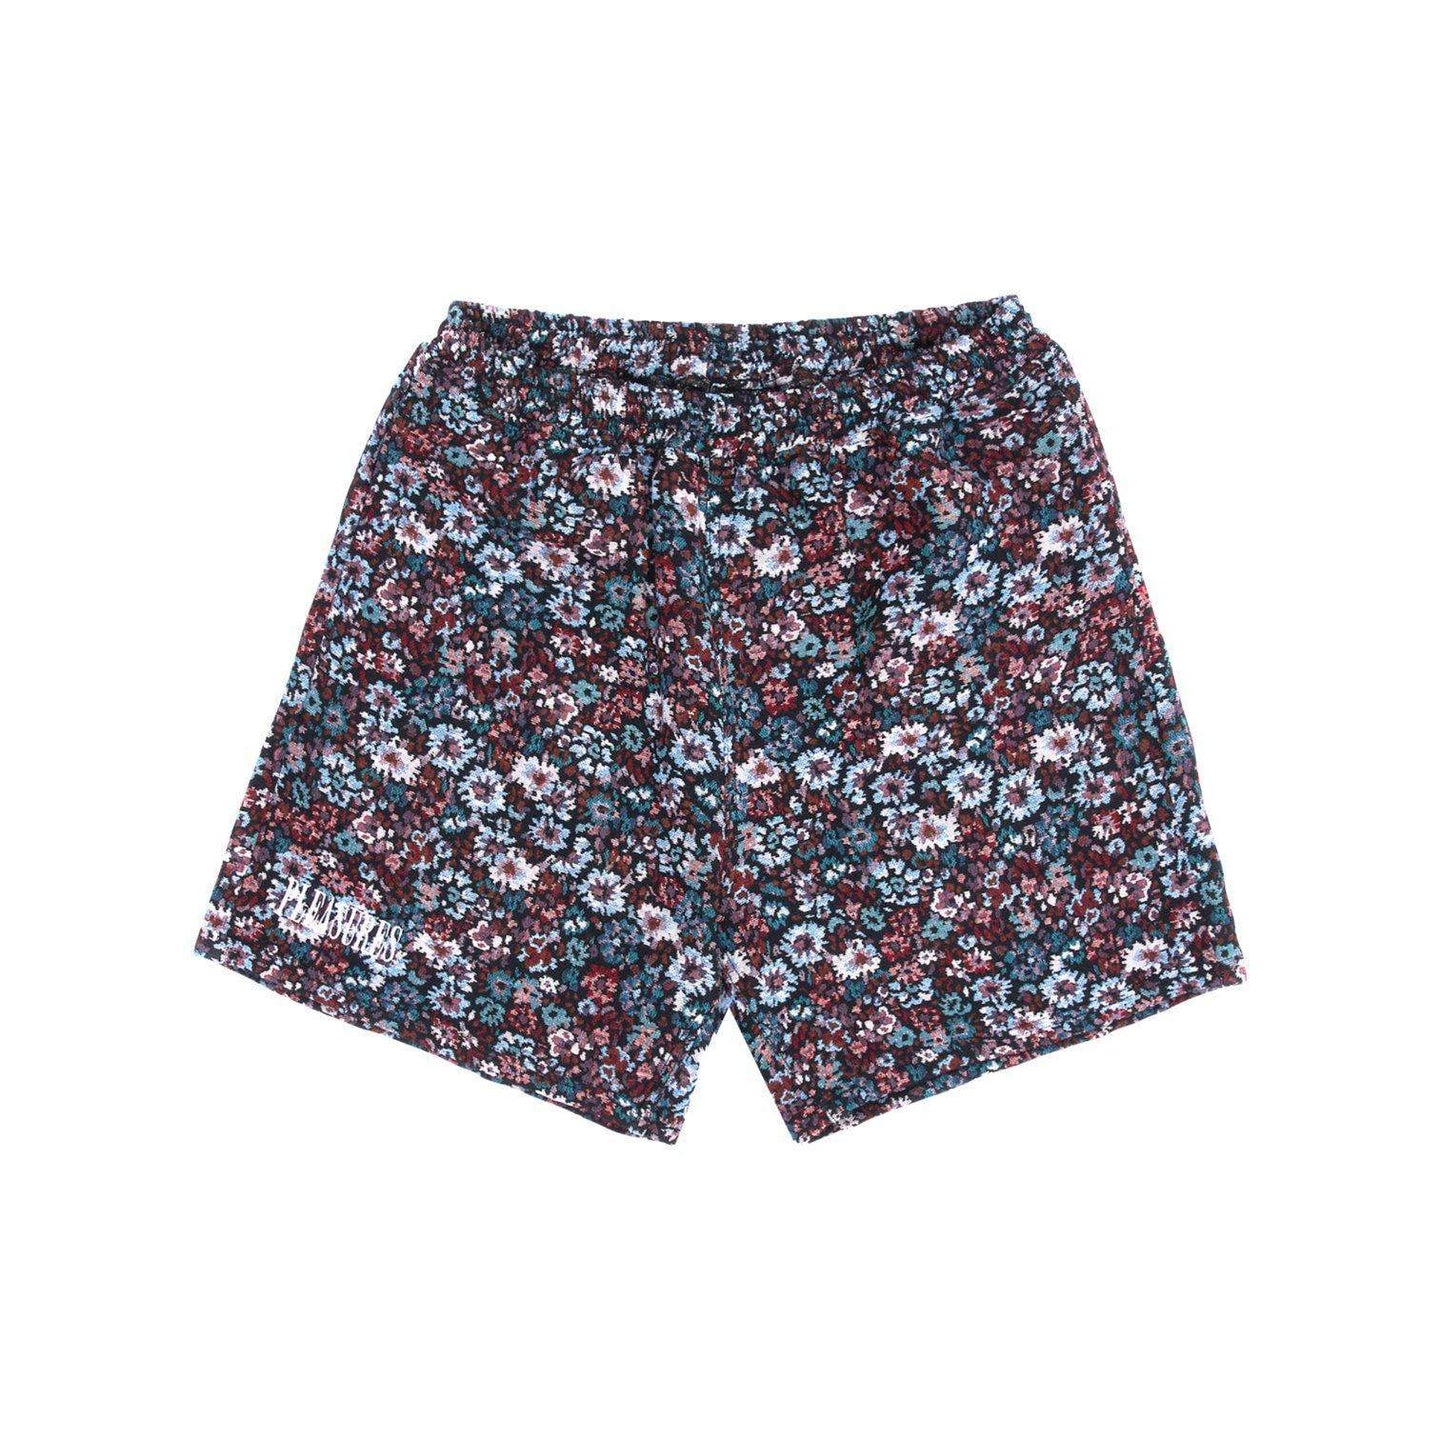 Quitter Floral Shorts-Pleasures